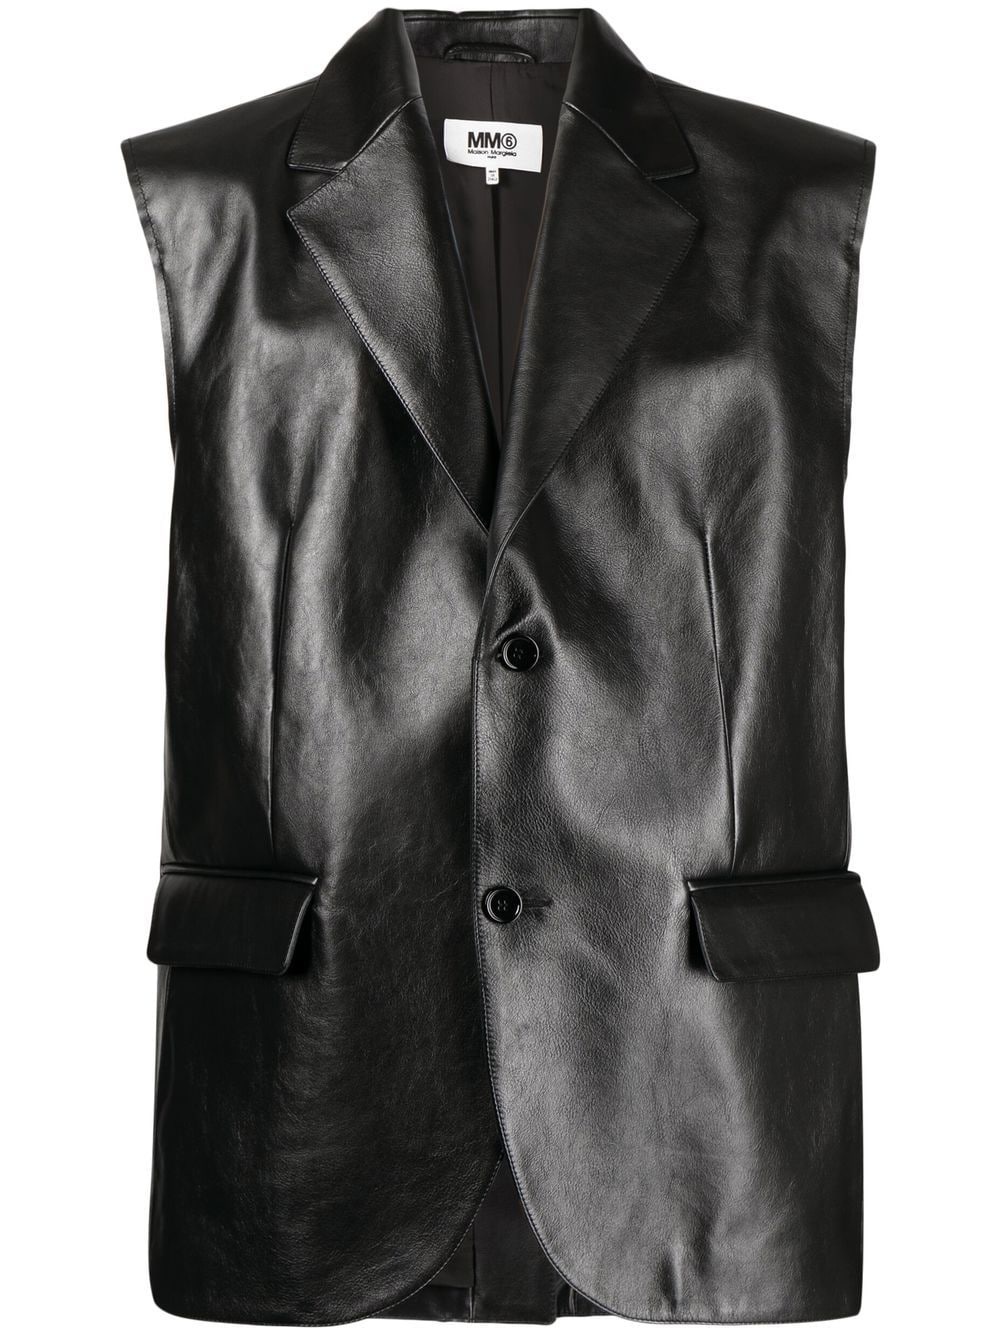 leather sleeveless shirt - 1